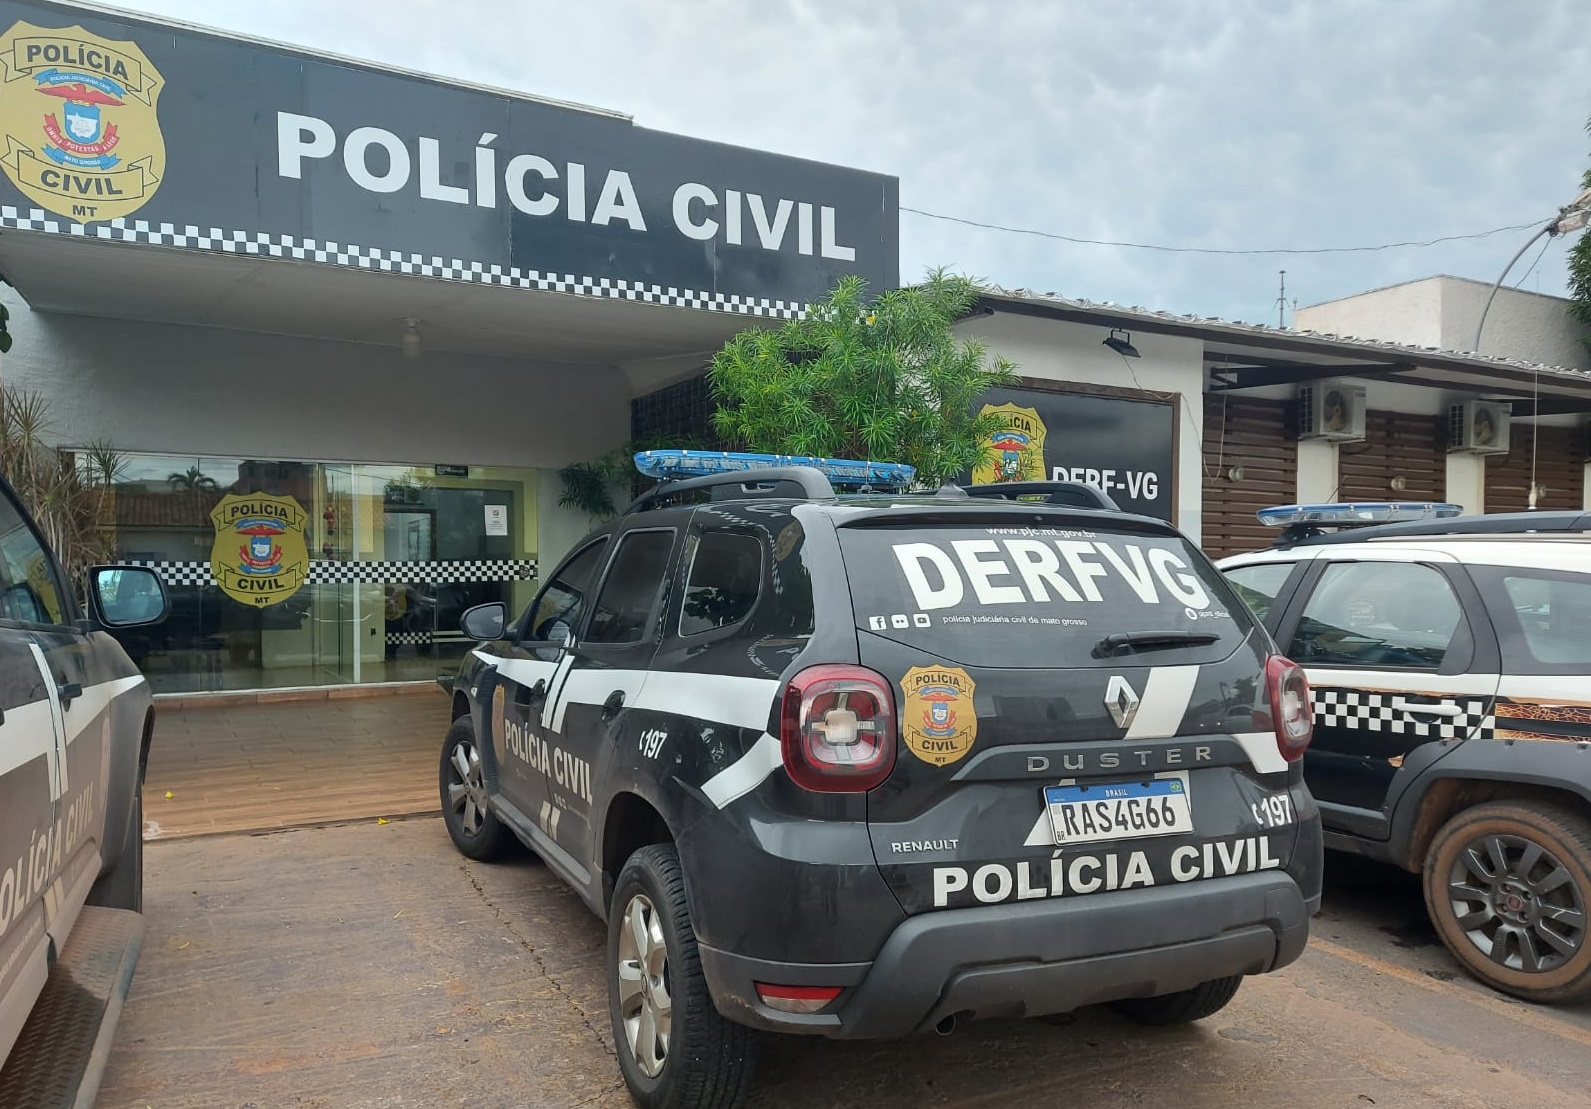 Polícia Civil recupera 15 celulares roubados/furtados em operação de combate à receptação em Várzea Grande